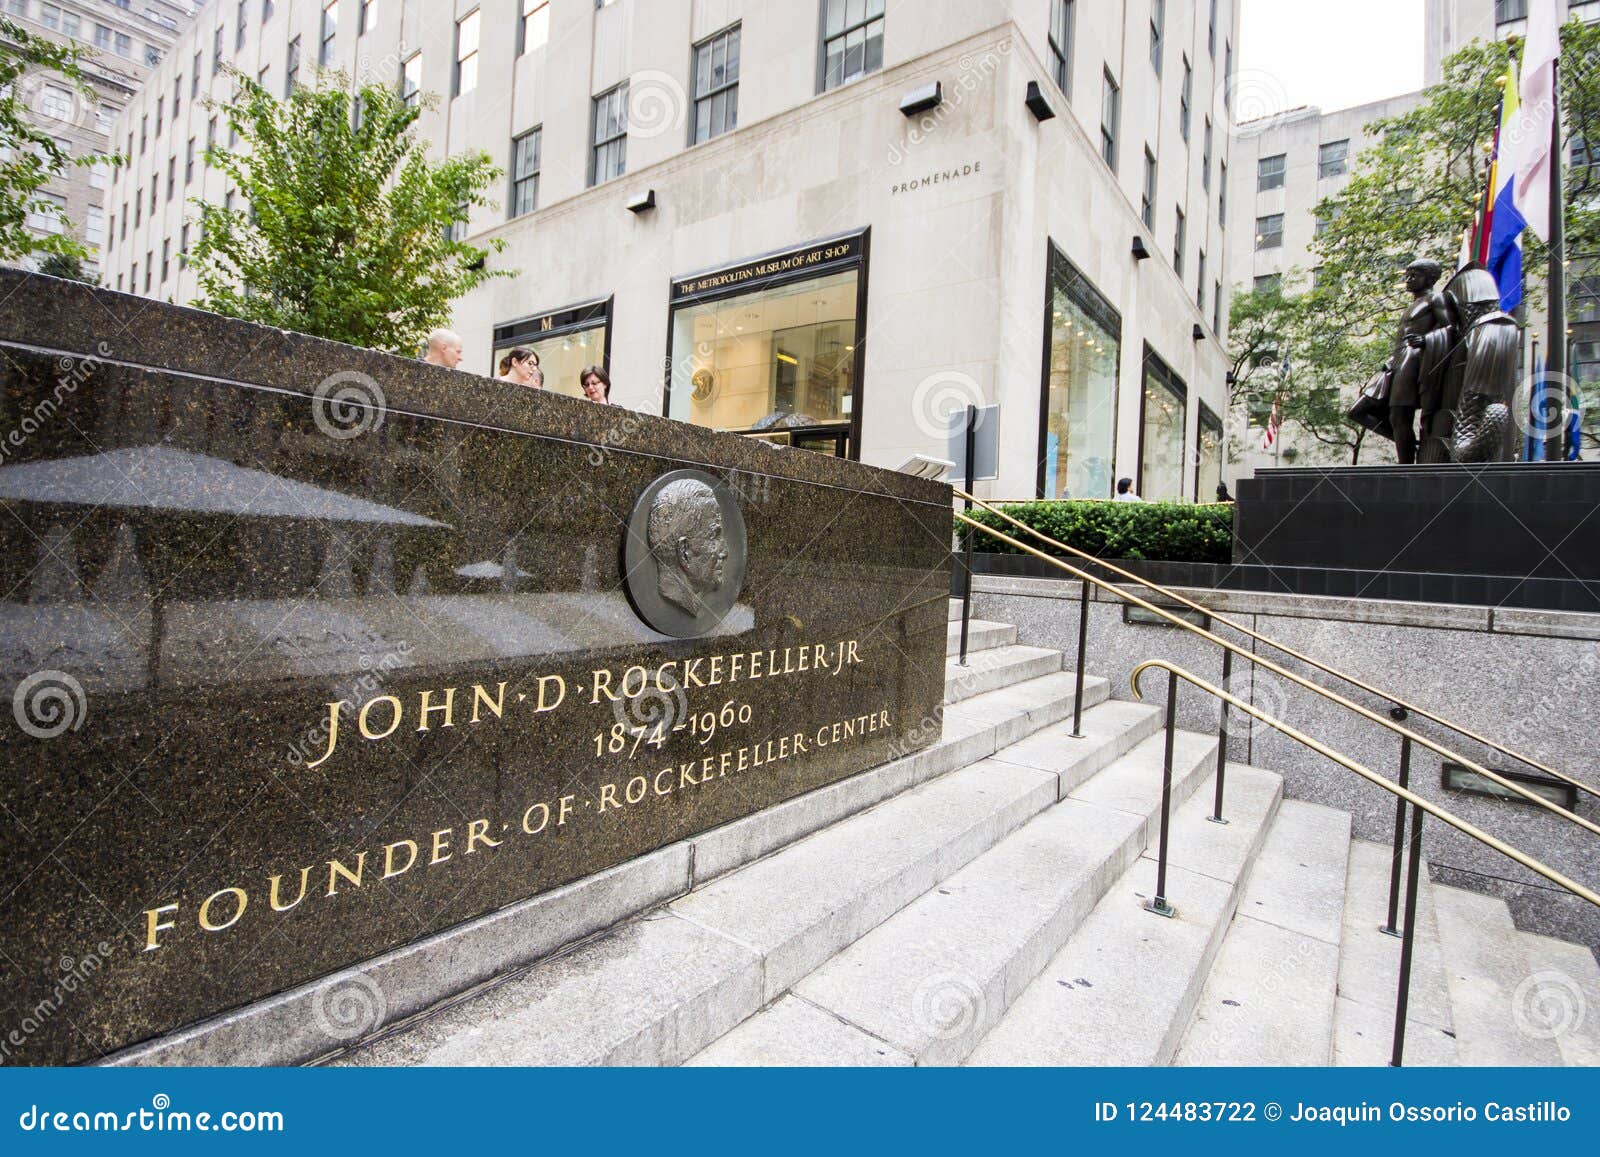 John D. Rockefeller, Jr. Residence - New York City